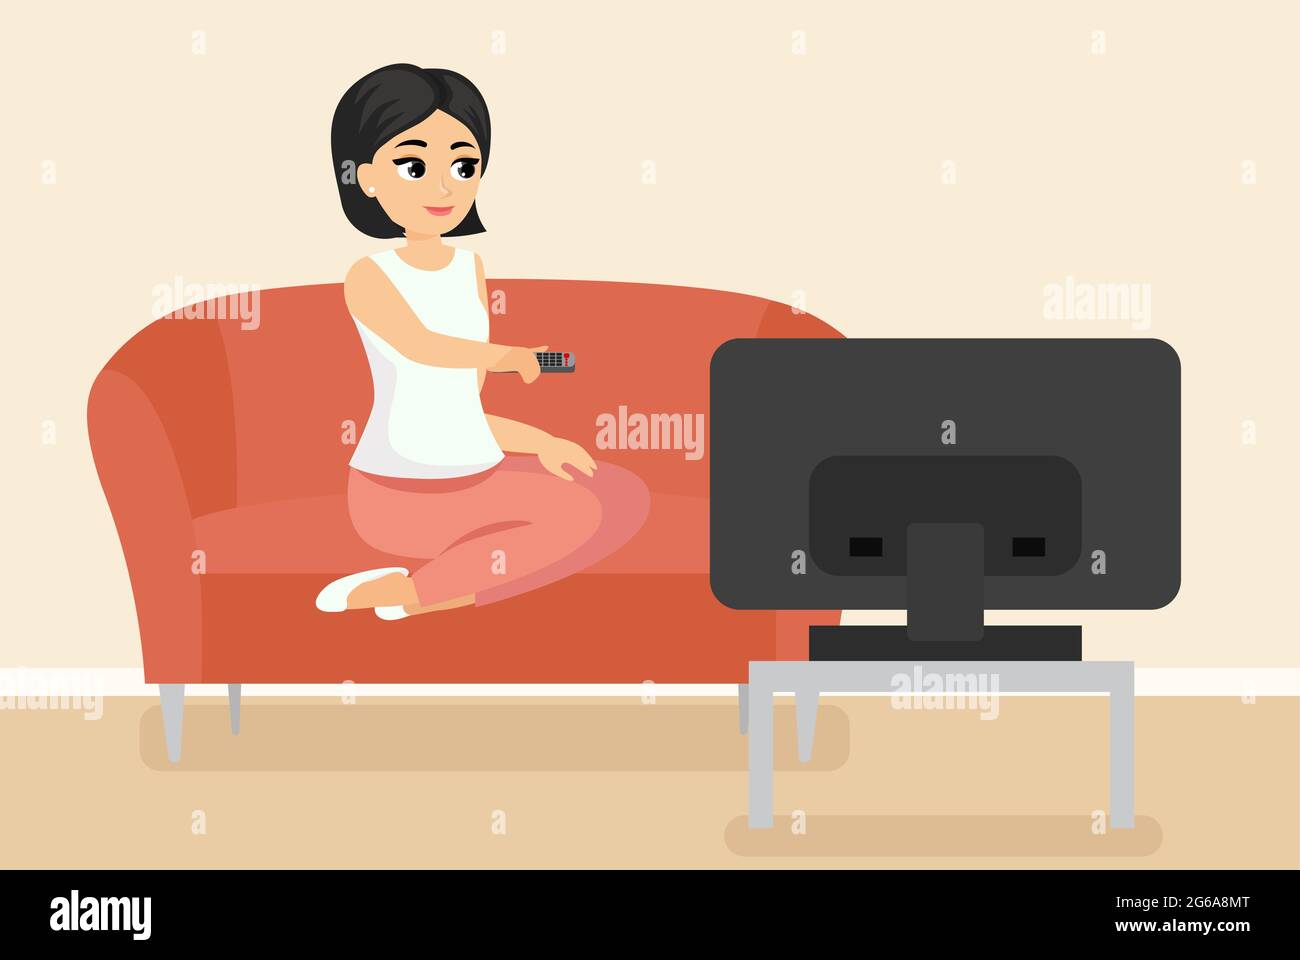 Immagine vettoriale della donna seduta sul divano che guarda la TV. Giovane ragazza adulta sul divano di fronte allo schermo televisivo in stile piatto cartoon. Illustrazione Vettoriale